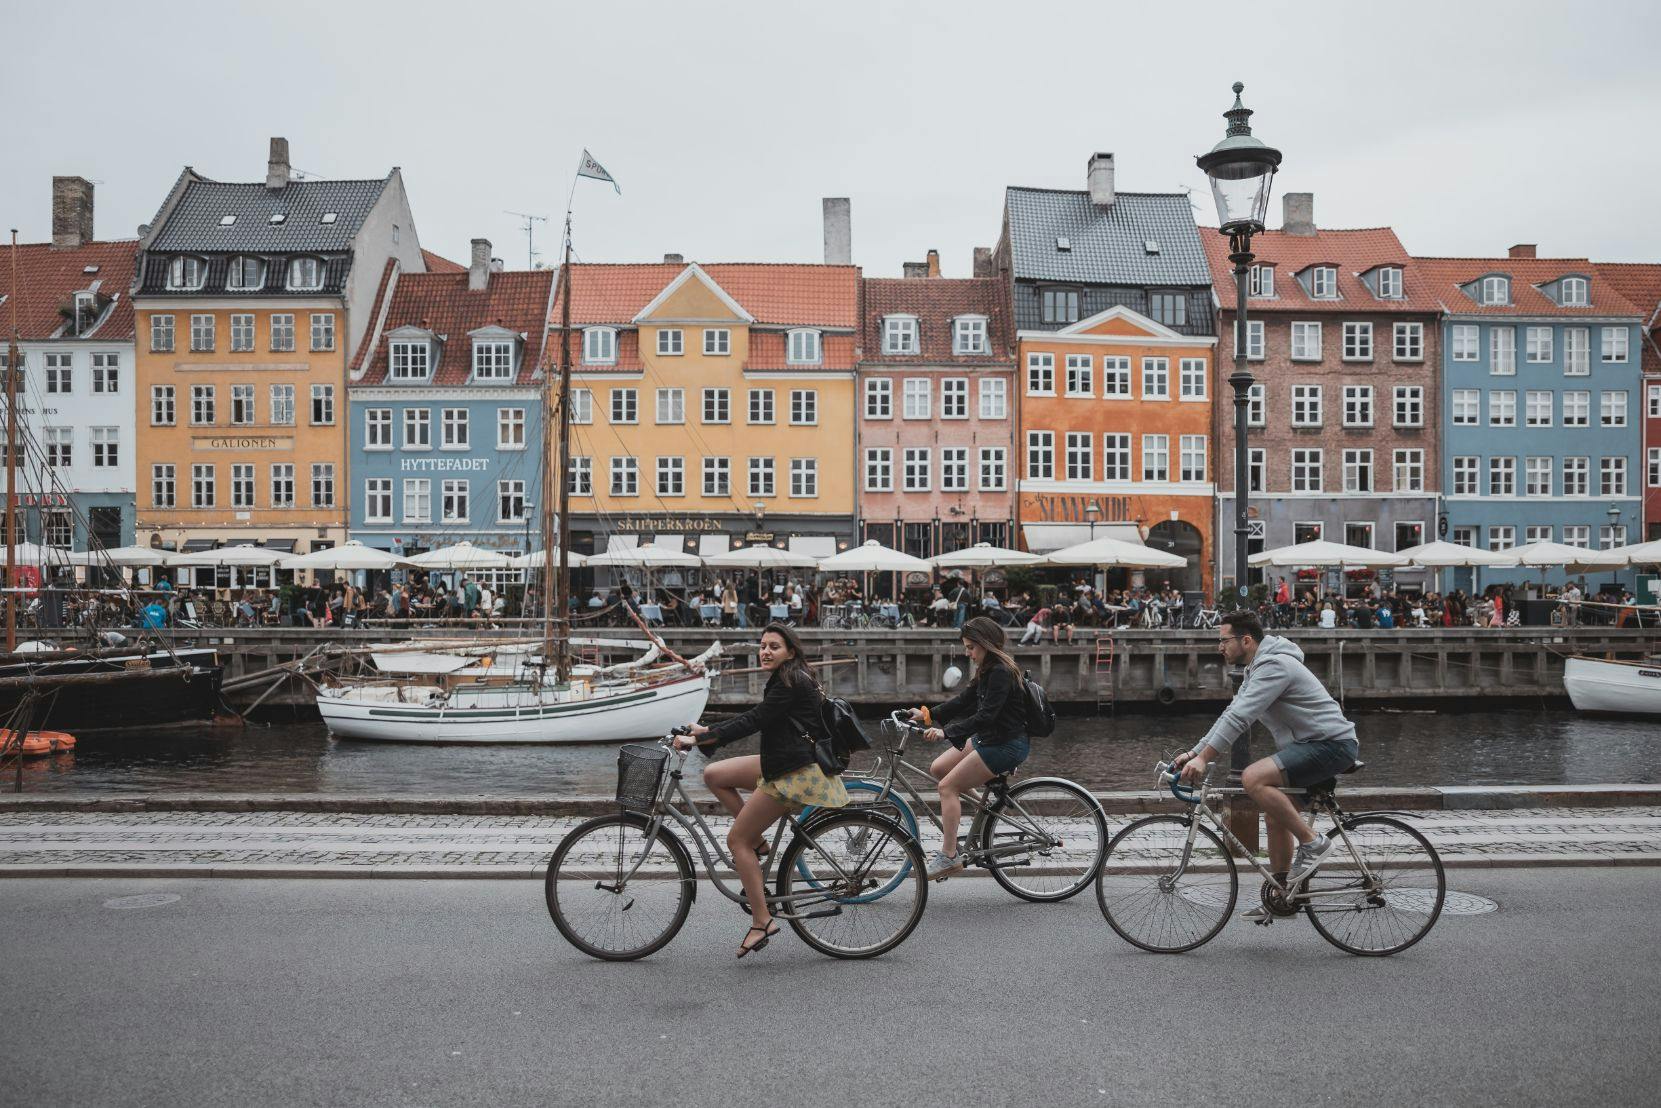 Hygge piesza wycieczka po Kopenhadze z miejscowym